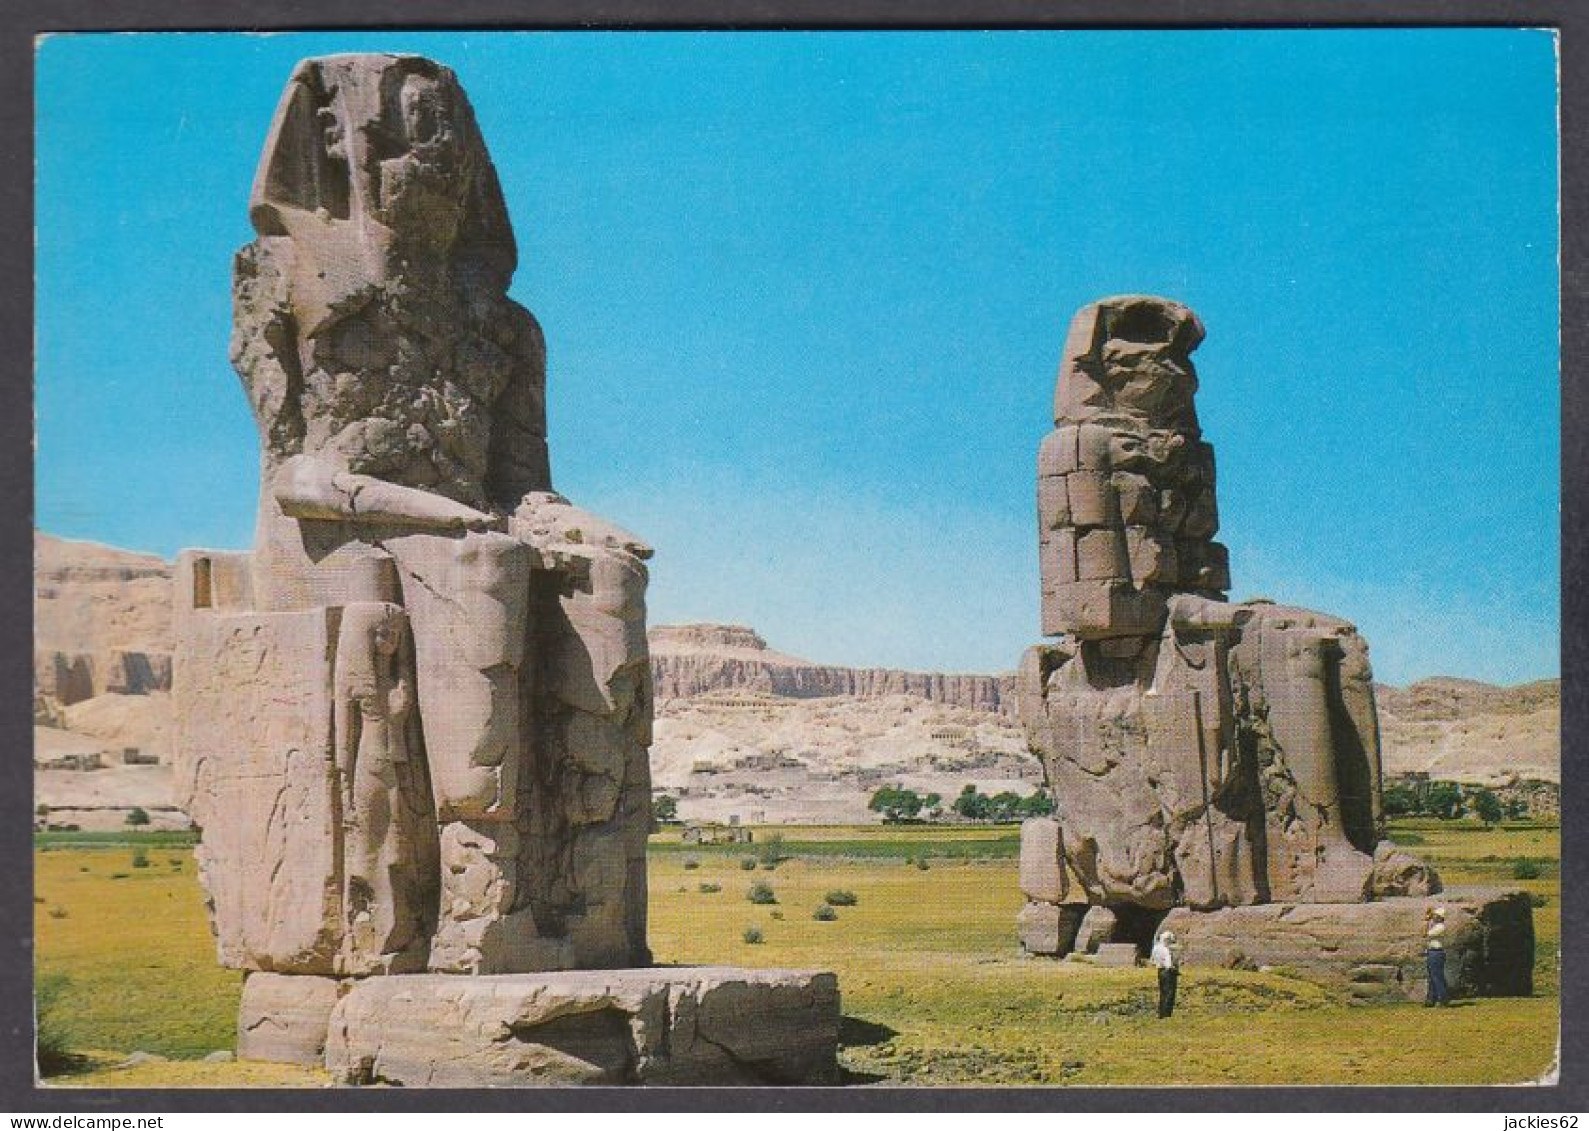 127363/ KÔM EL-HETTAN, Colossi Of Memnon - Louxor